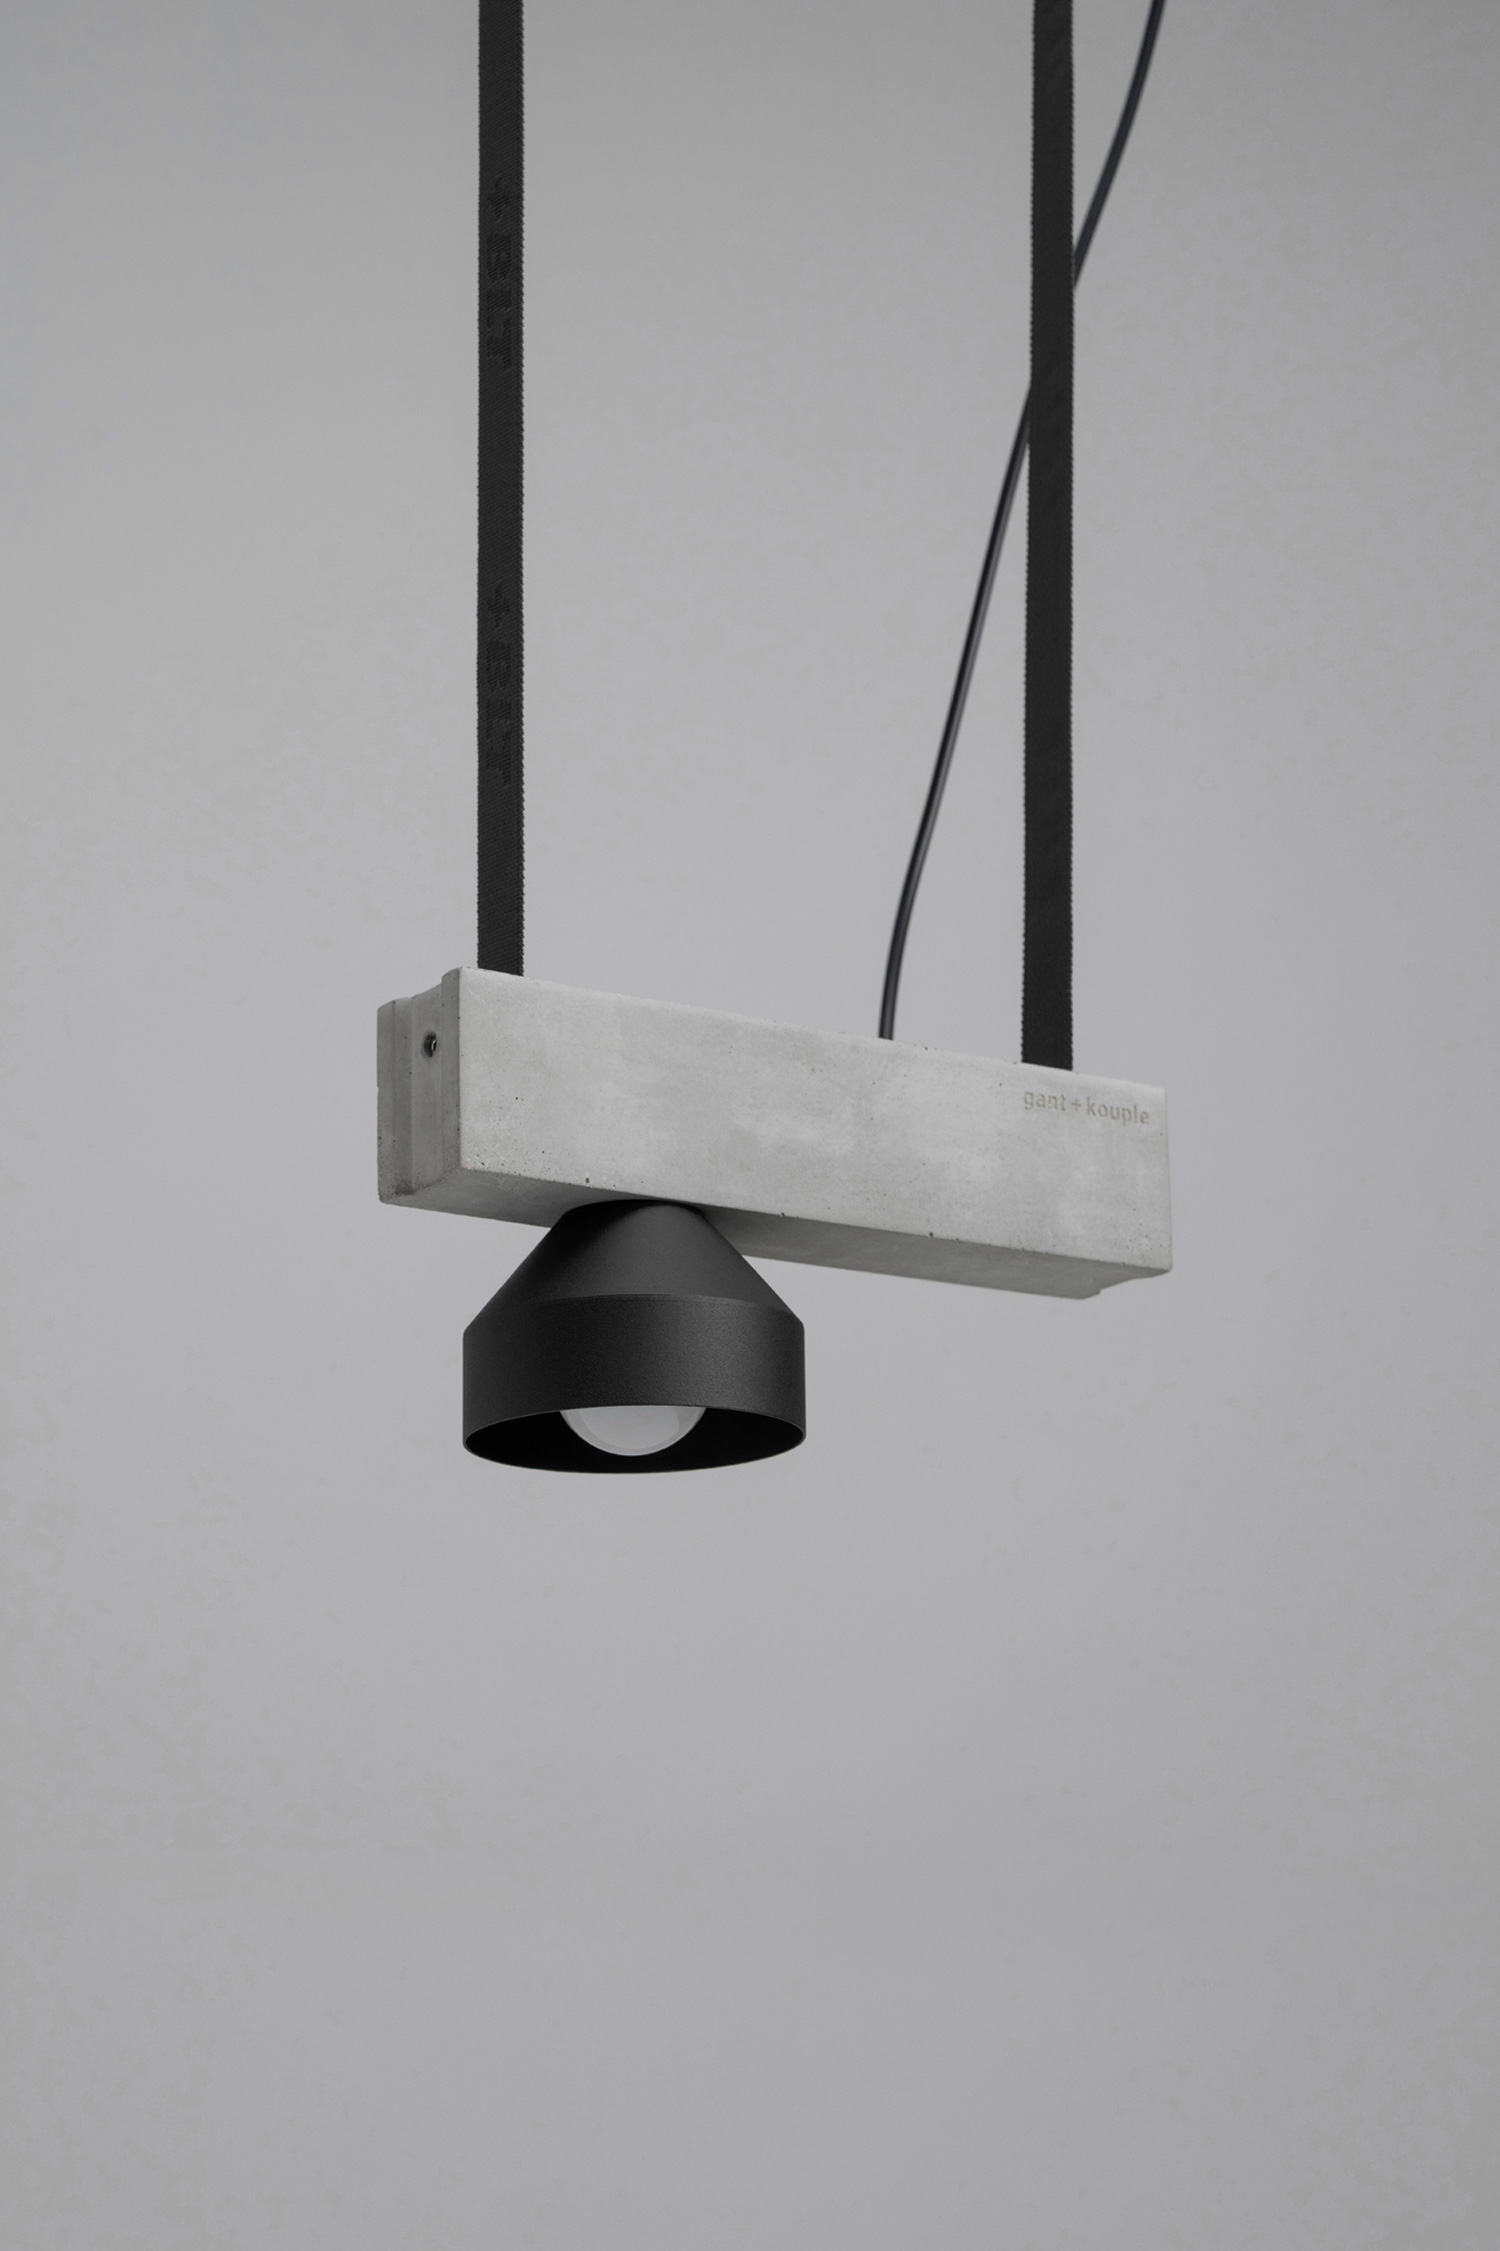 The gant + kouple Block Lamp Series - Gessato